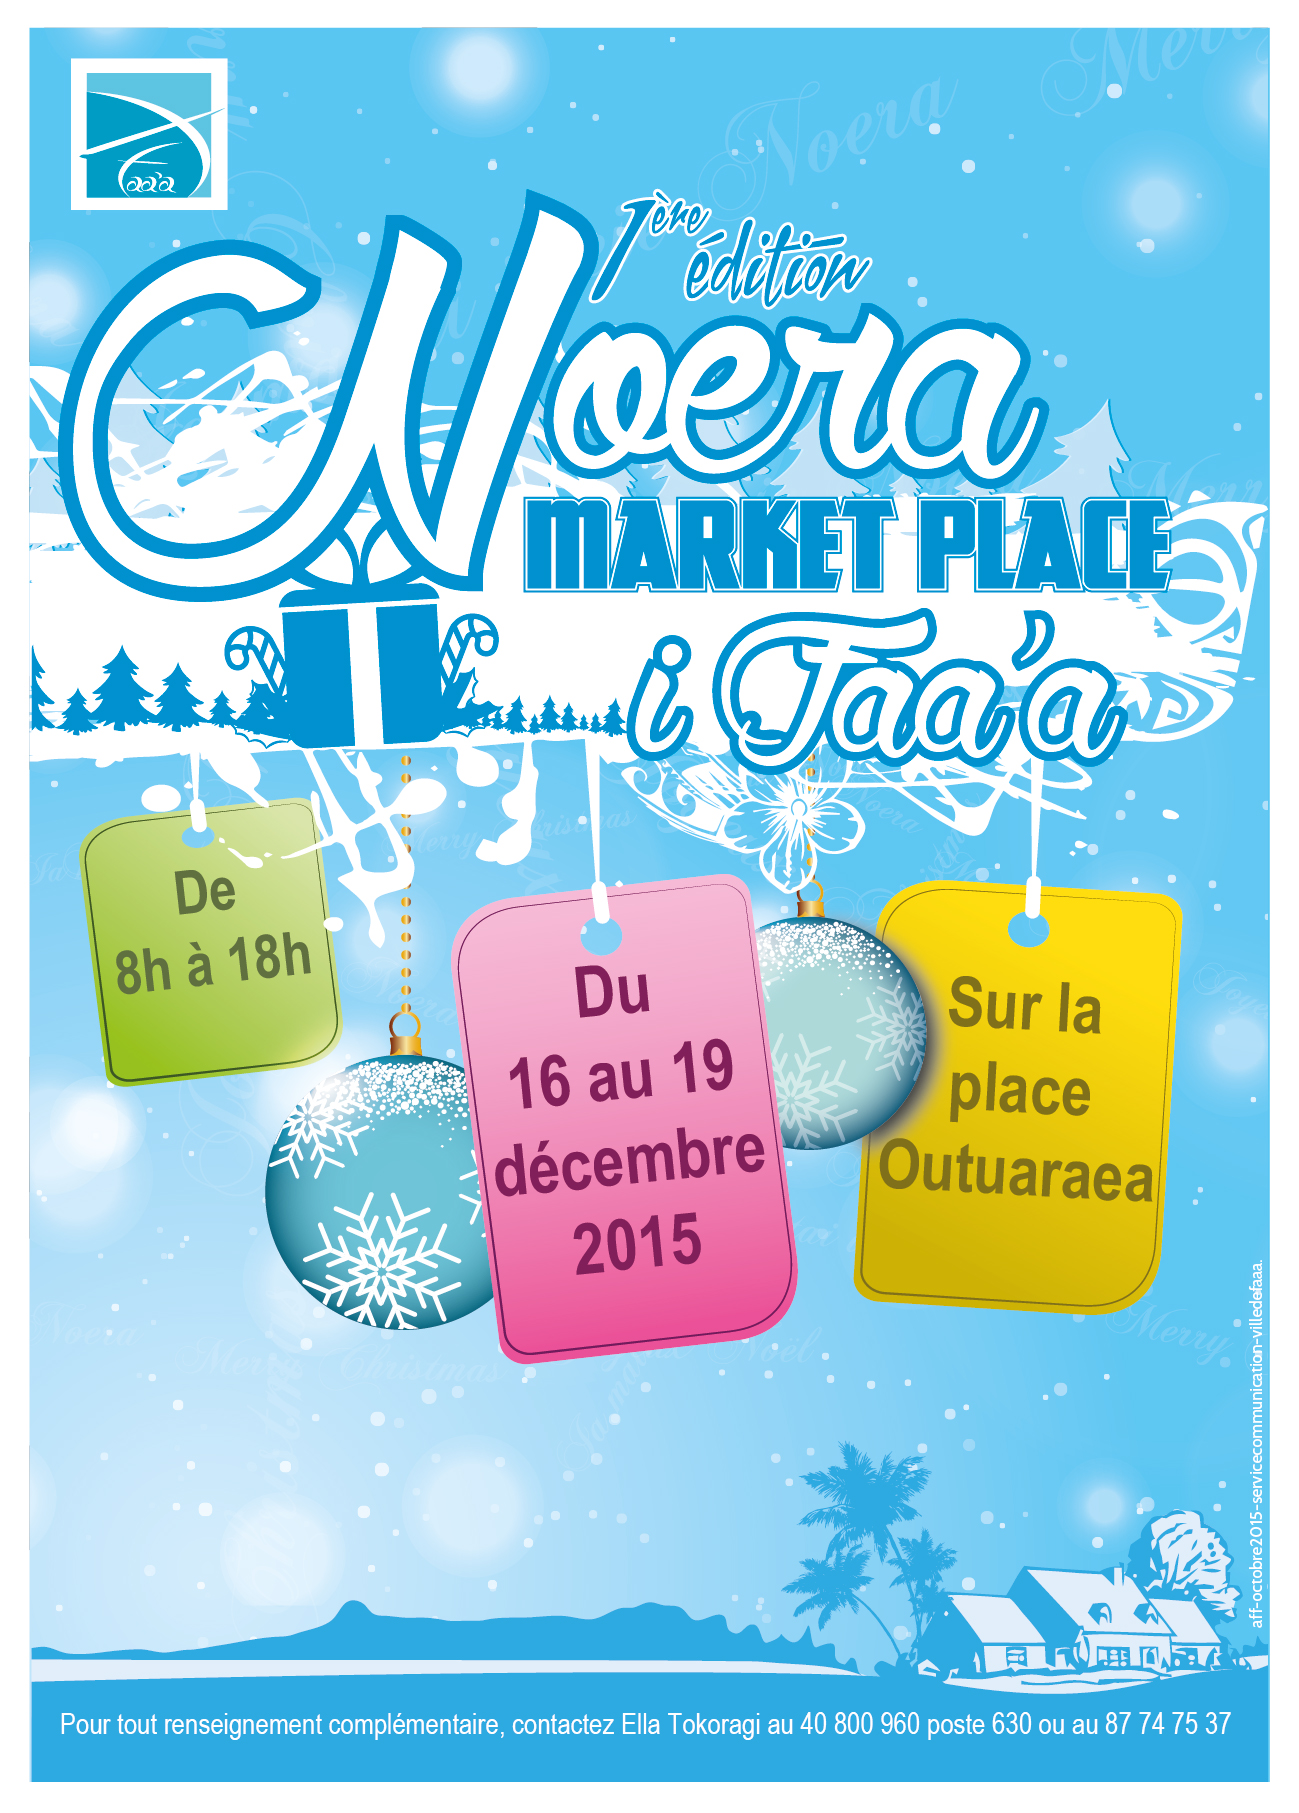 "Noera Market Place" se tiendra à partir de demain jusqu'à samedi sur le site de Outuaraea